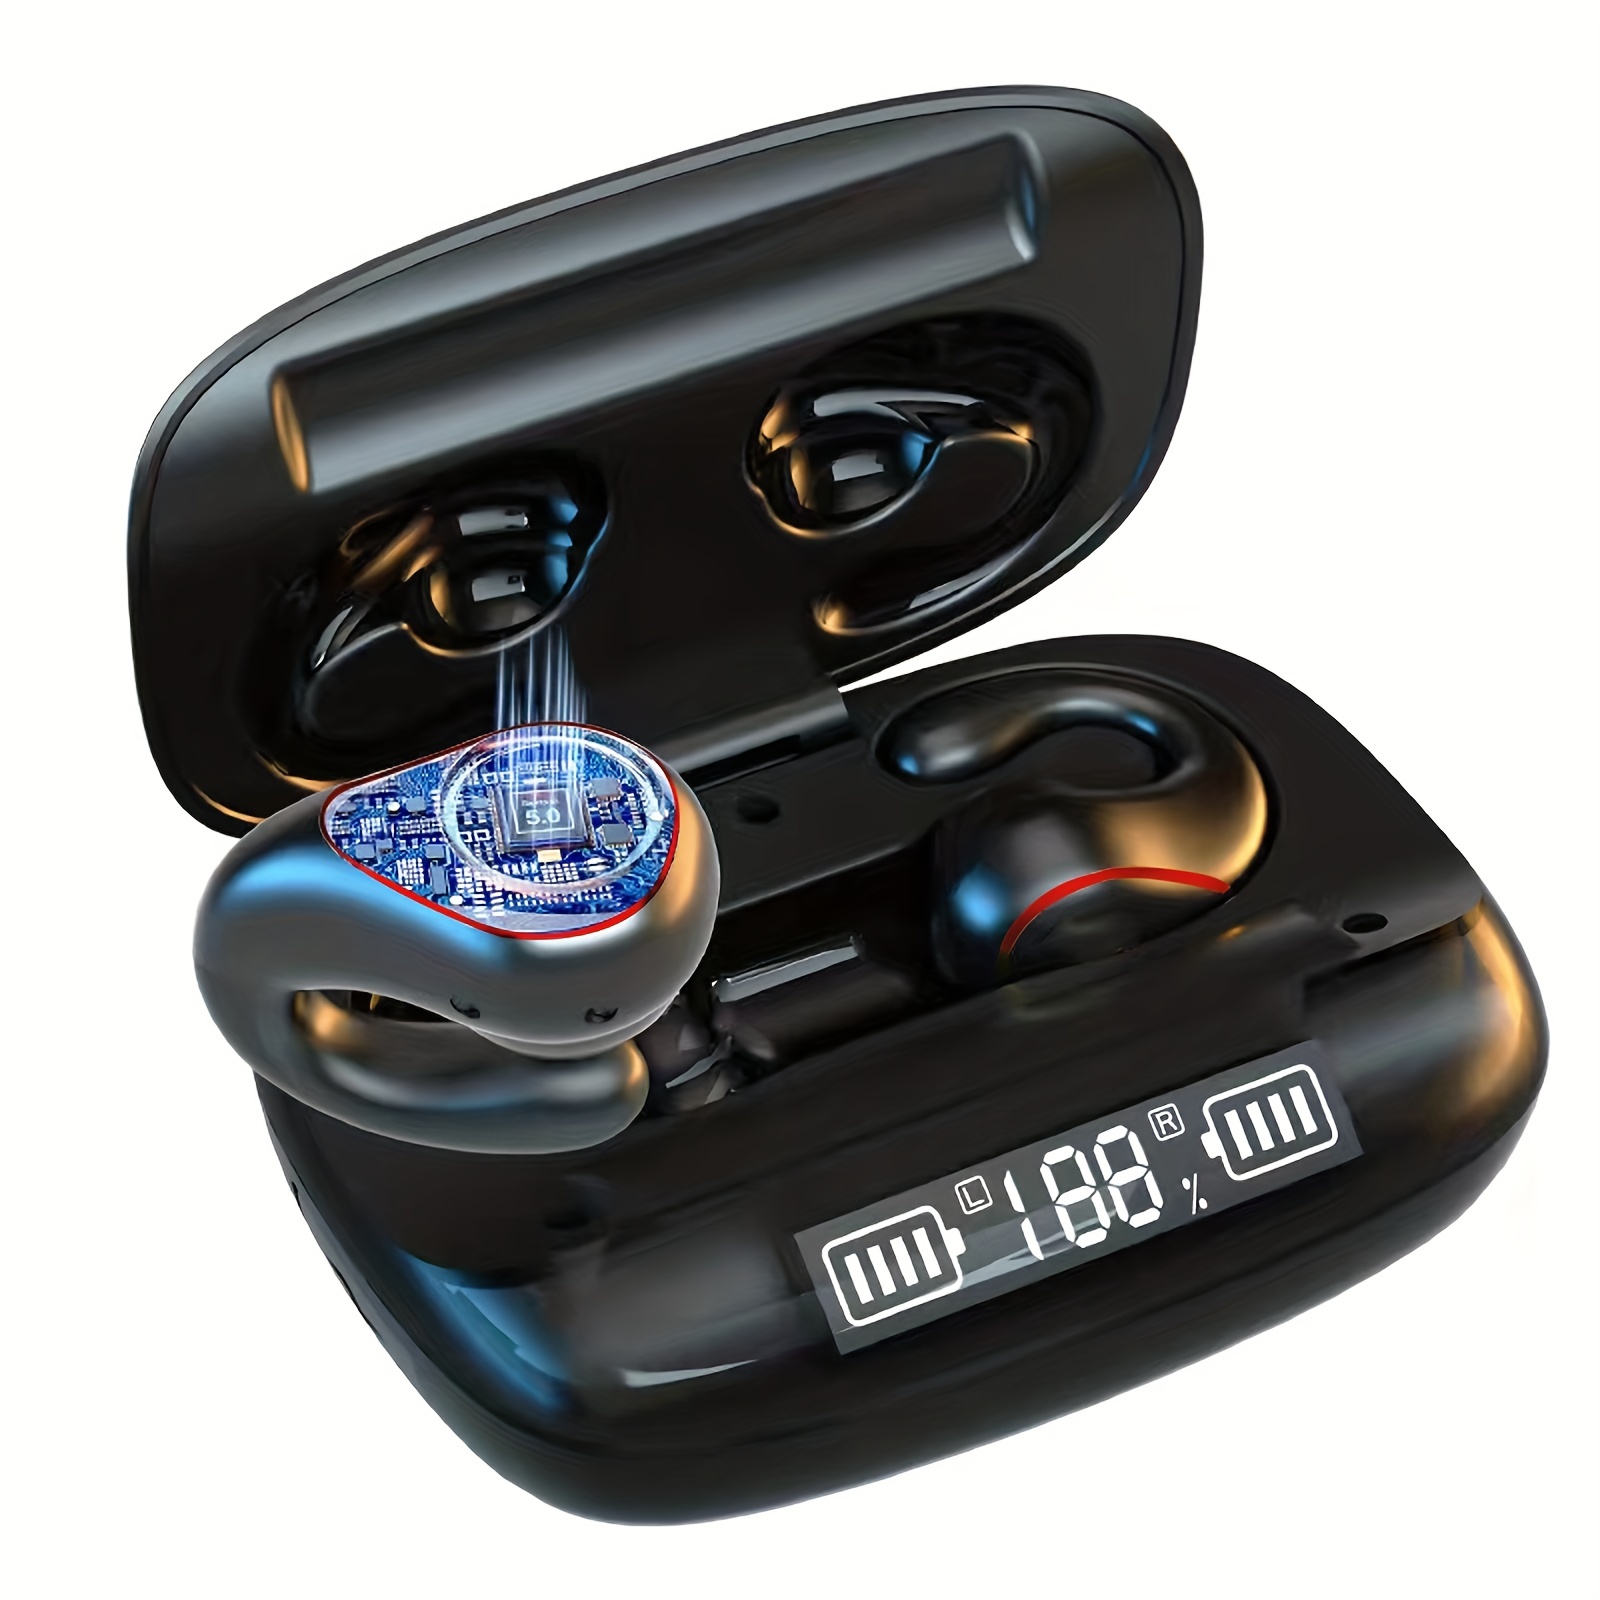 Auriculares inalámbricos para canales auditivos pequeños, auriculares  Bluetooth de colores lindos, llamada inteligente de reducción de ruido